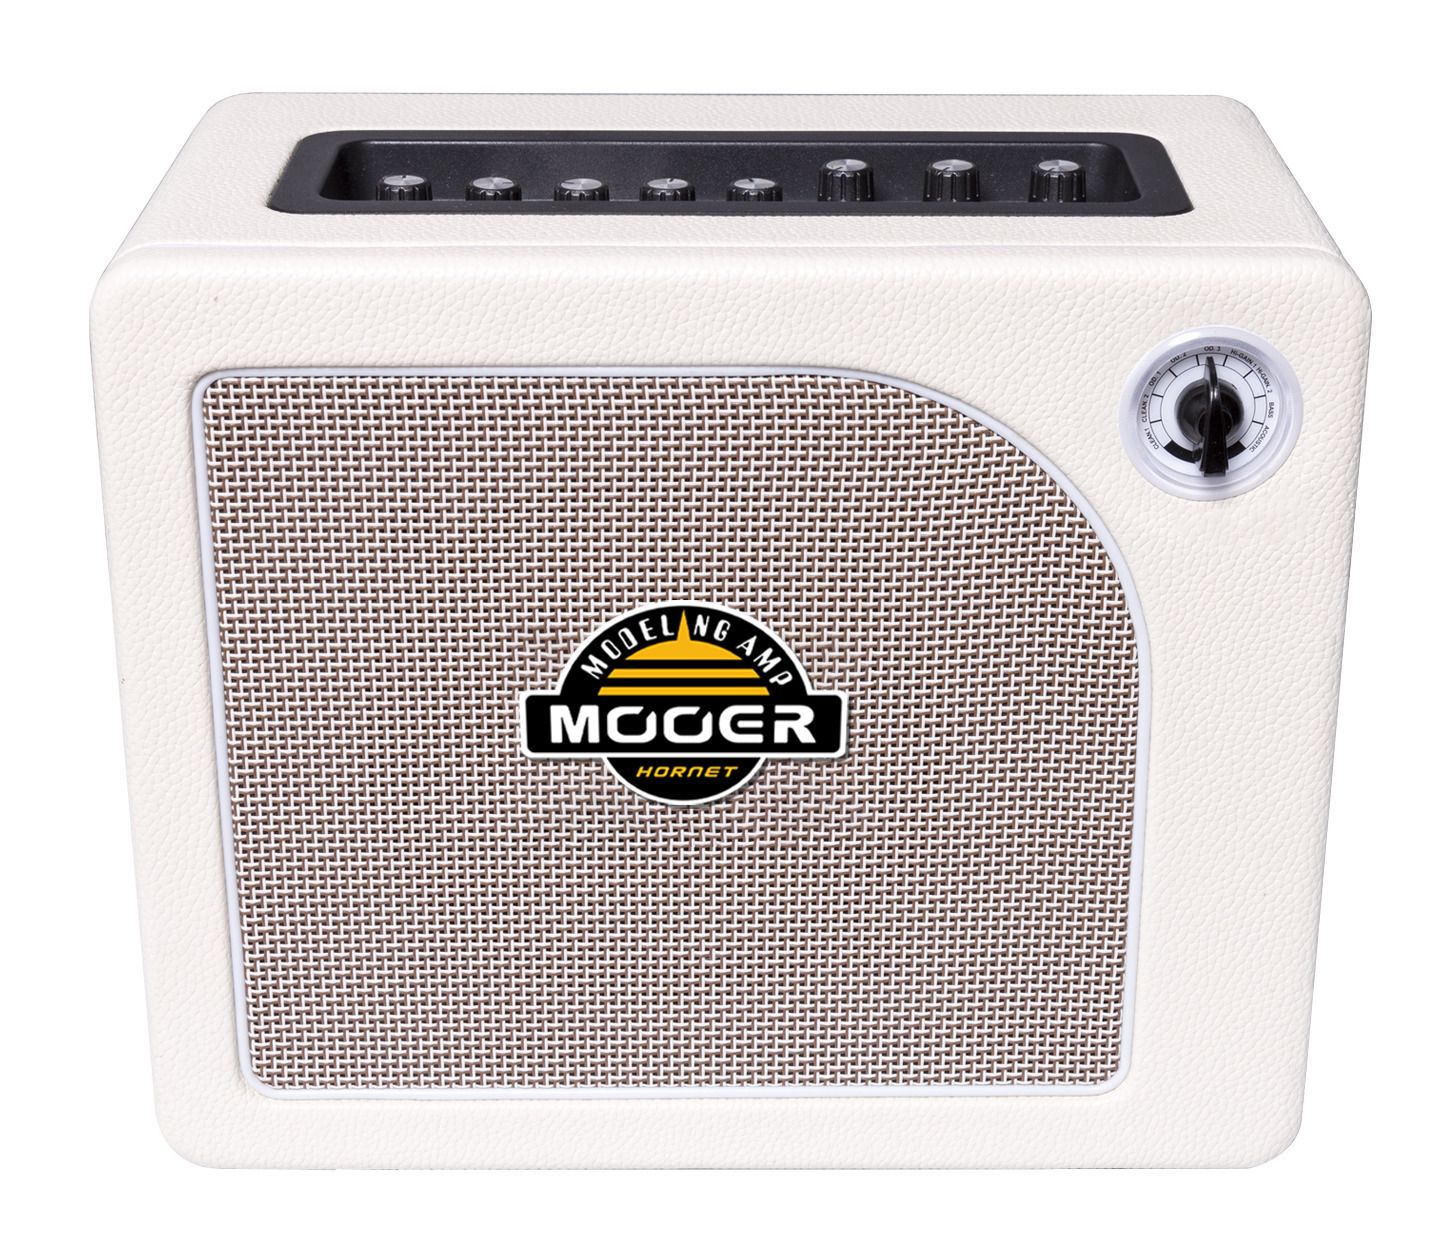 Mooer Hornet White 30W - 30 Watt Modeling Guitar Amplifier - White